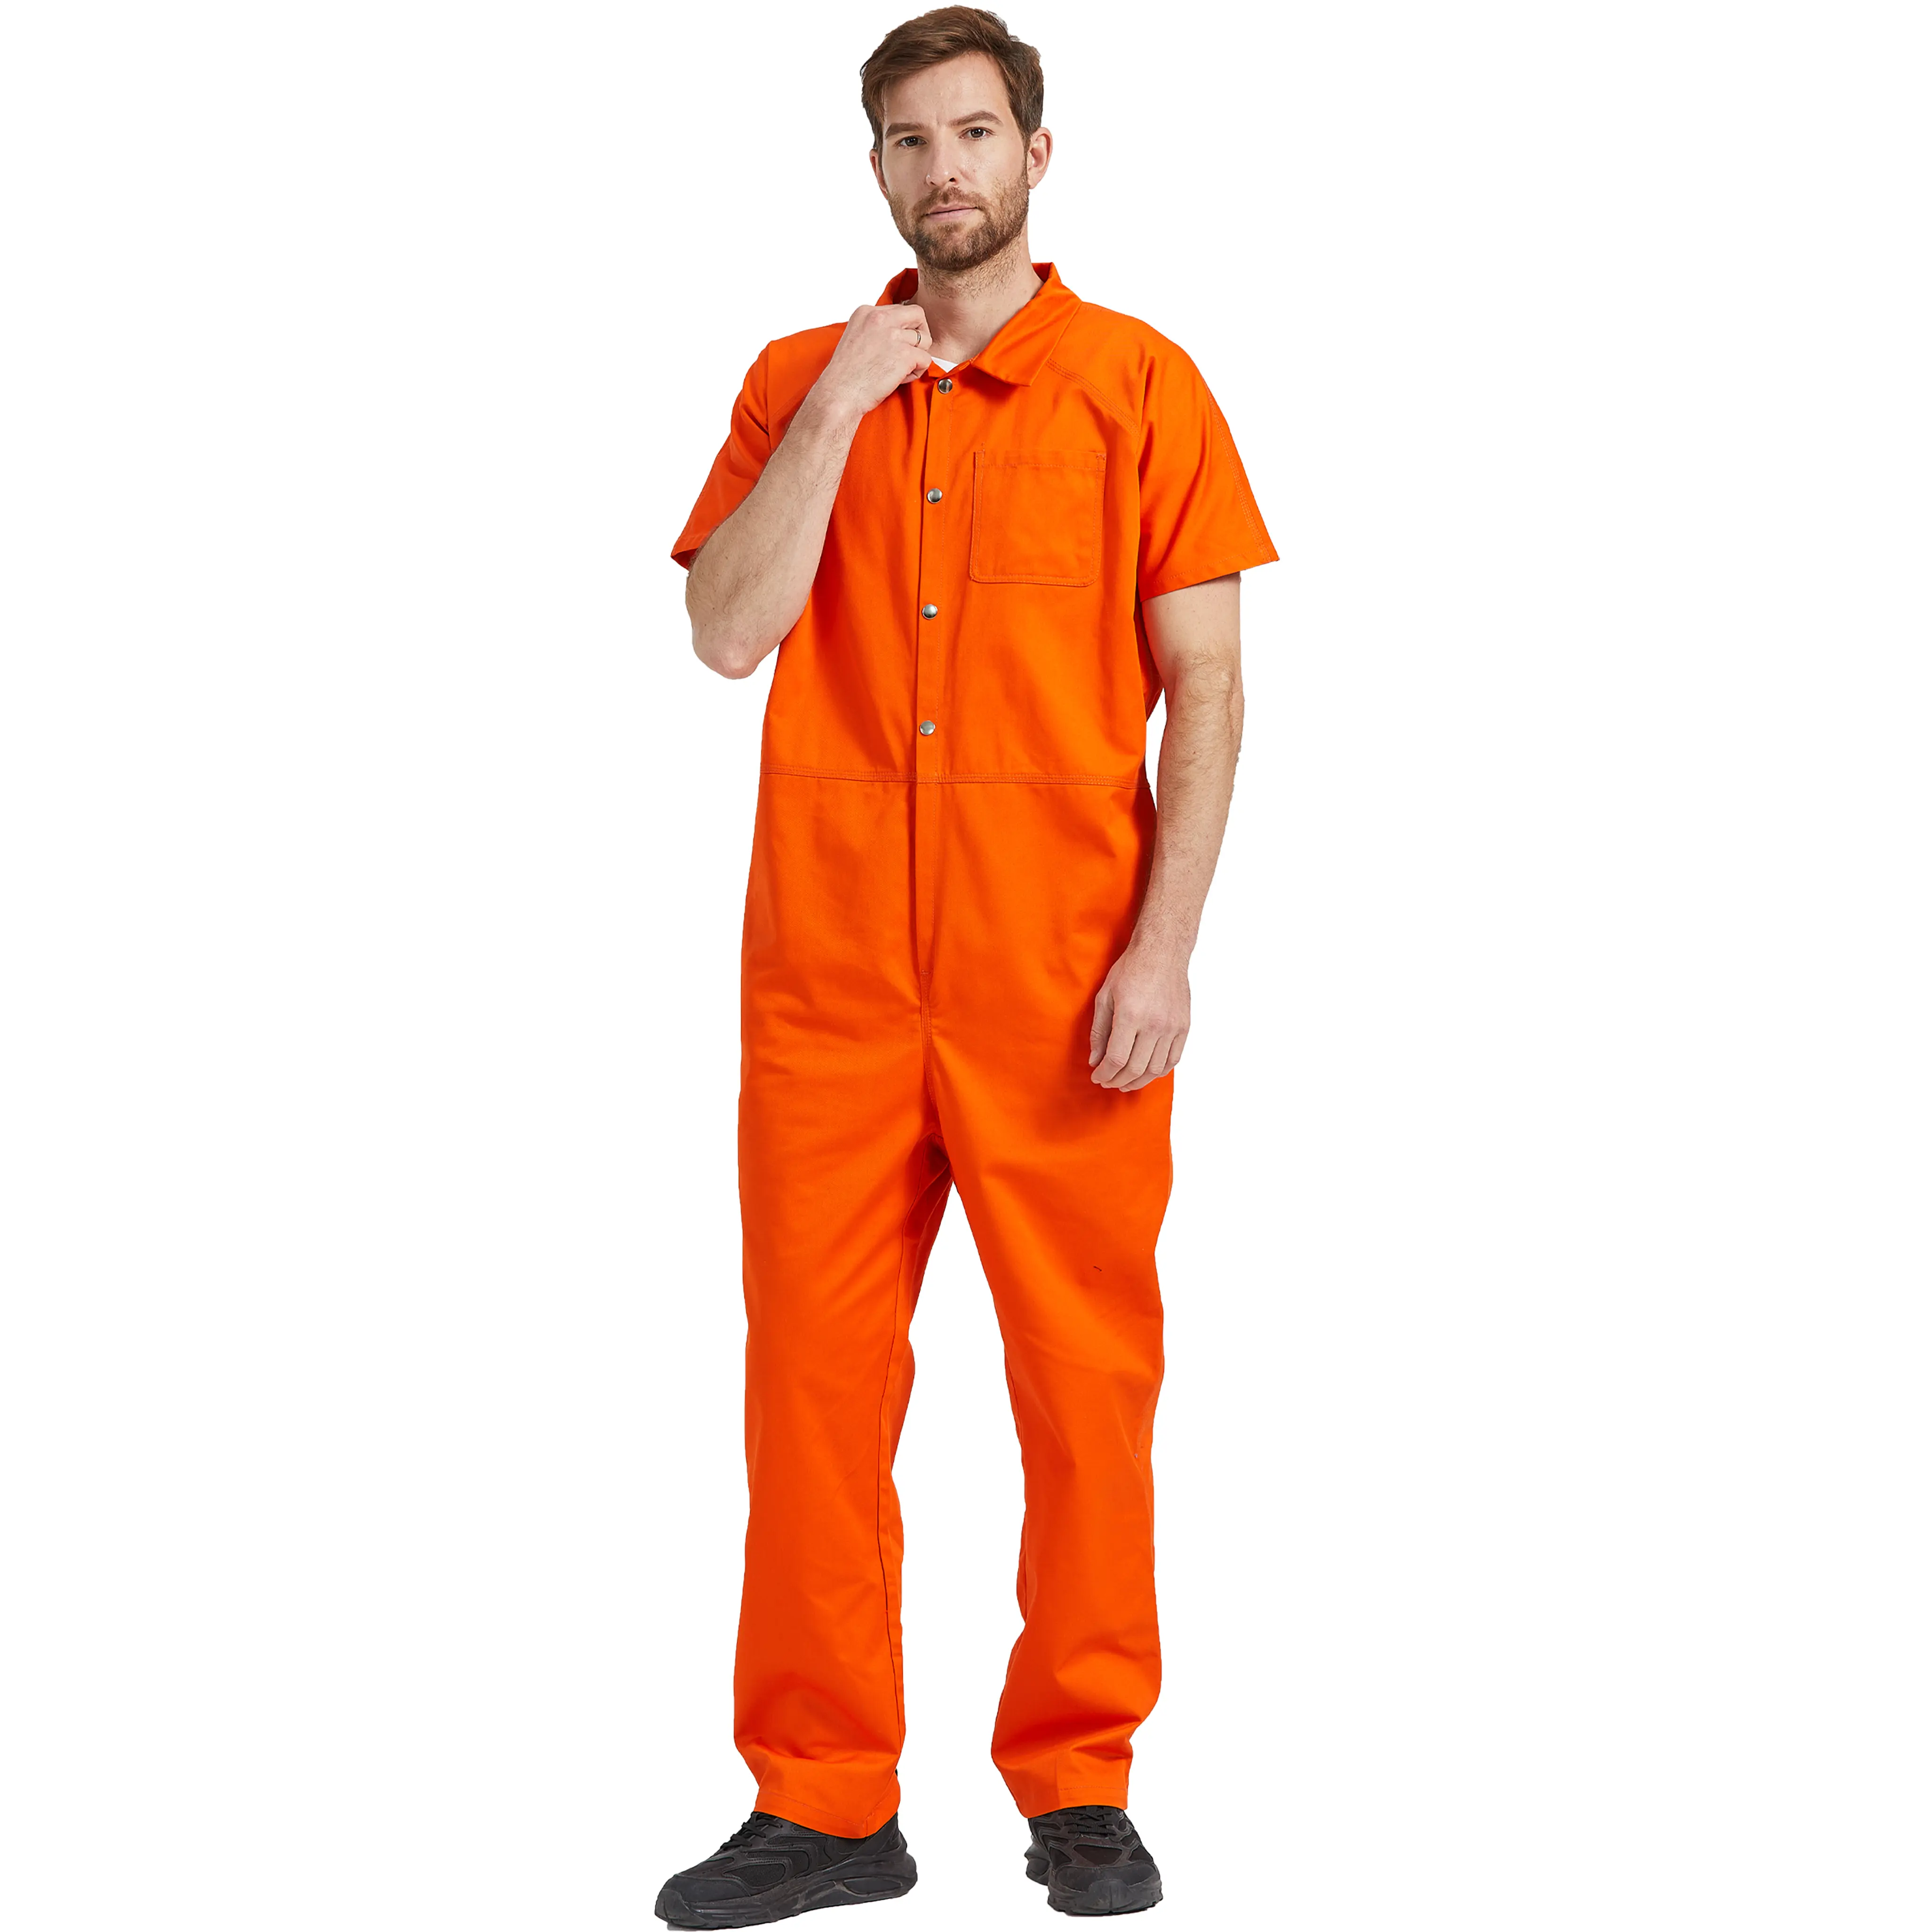 Ver imagem maior Compartilhar T/c calças de trabalho geral novo design de moda homens mecânico macacão roupas trabalho geral para trabalhar